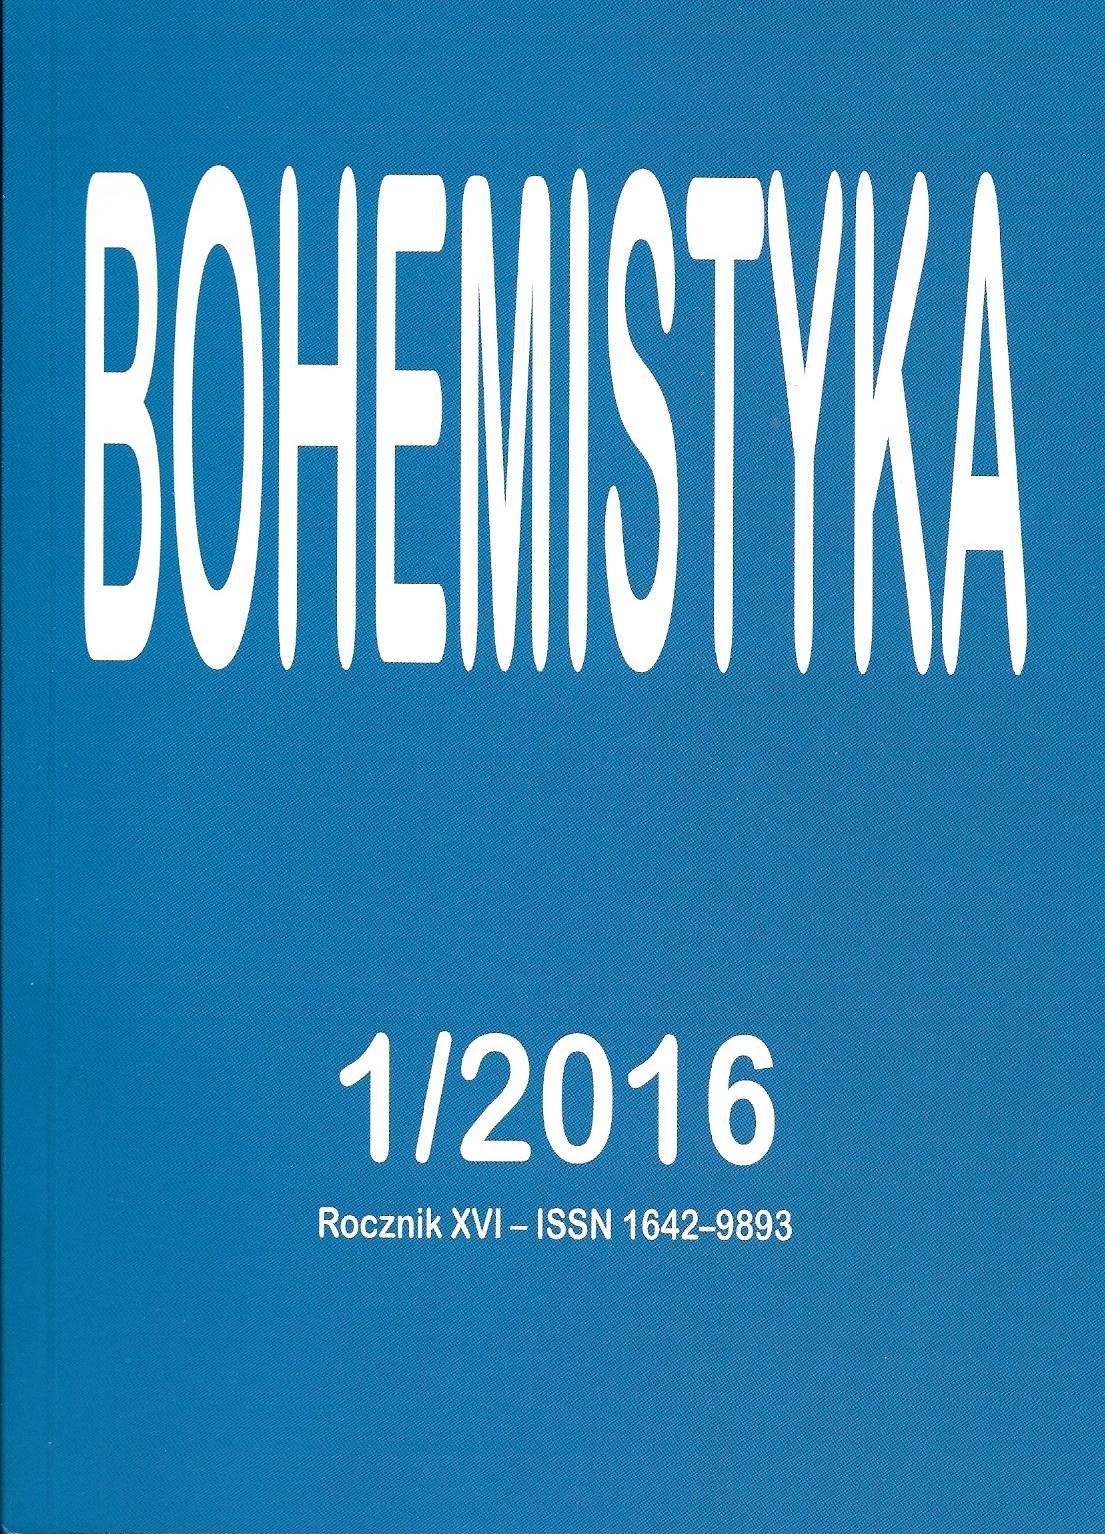 Wojna – retoryka walki, red. Joanna Goszczyńska, Wydział Polonistyki Uniwersytetu Warszawskiego, Warszawa 2015, 258 s. ISBN 978–83–64111–18–1 Cover Image